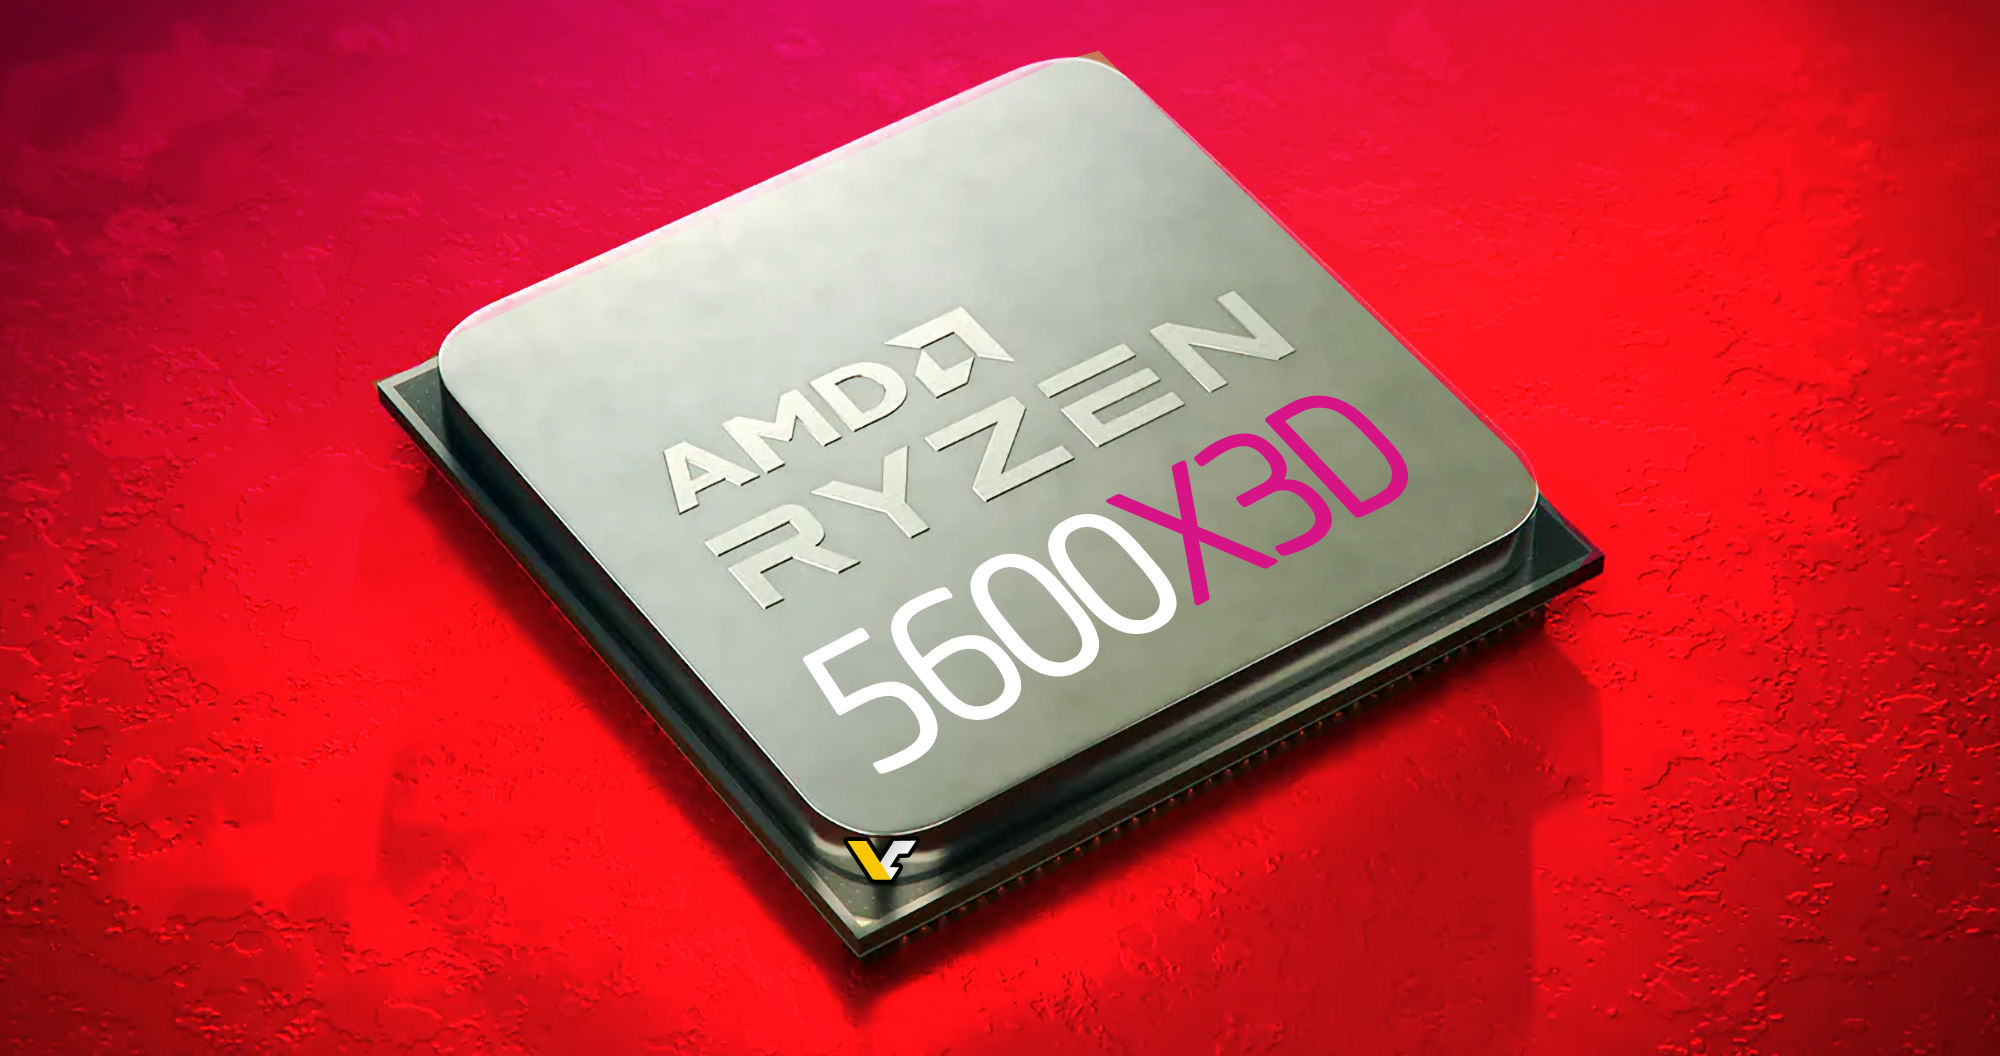 AMD's Ryzen 5 5600X Zen 3 CPU Hits New Low at $200